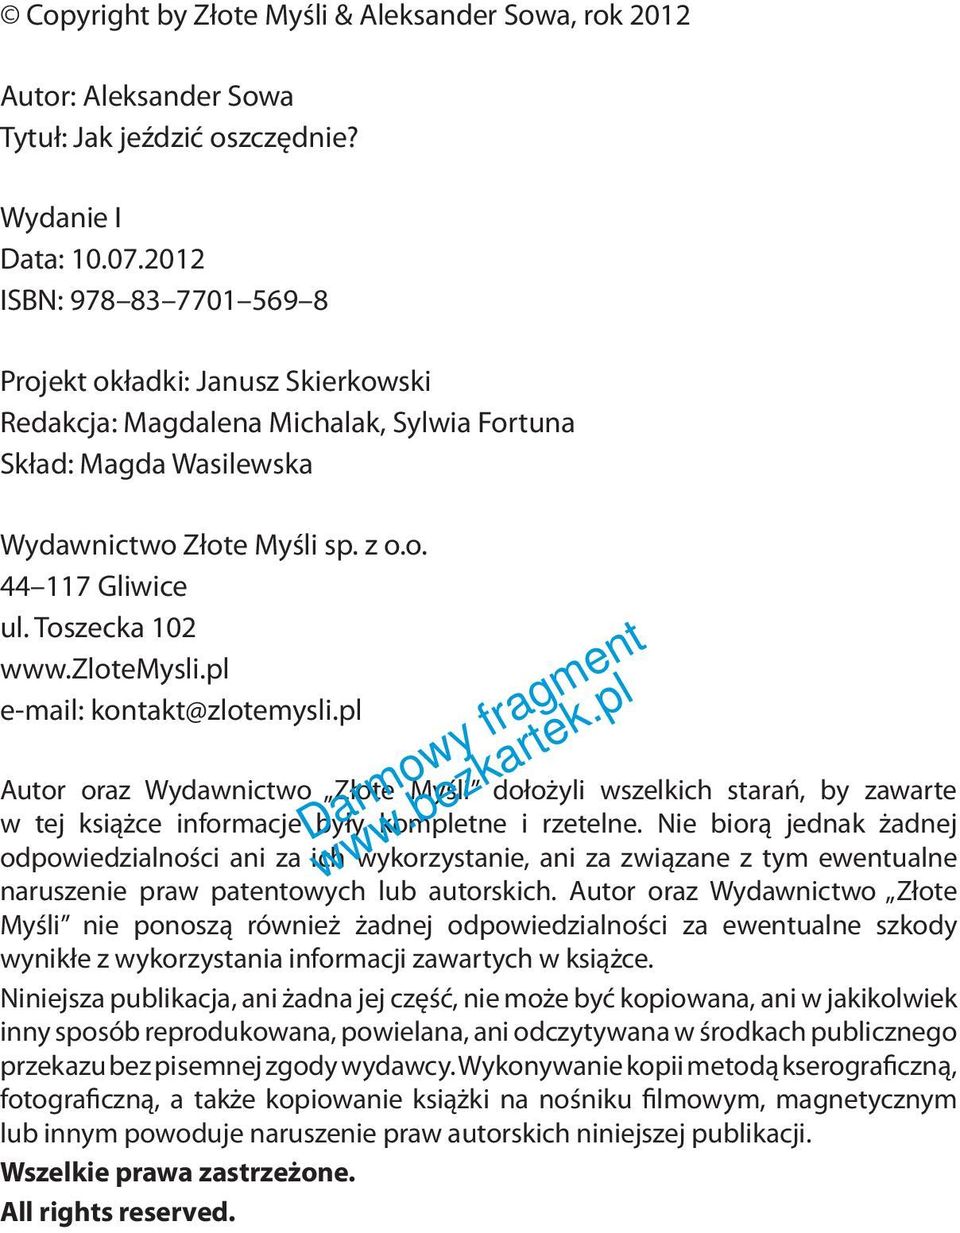 Toszecka 102 www.zlotemysli.pl e-mail: kontakt@zlotemysli.pl Autor oraz Wydawnictwo Złote Myśli dołożyli wszelkich starań, by zawarte w tej książce informacje były kompletne i rzetelne.